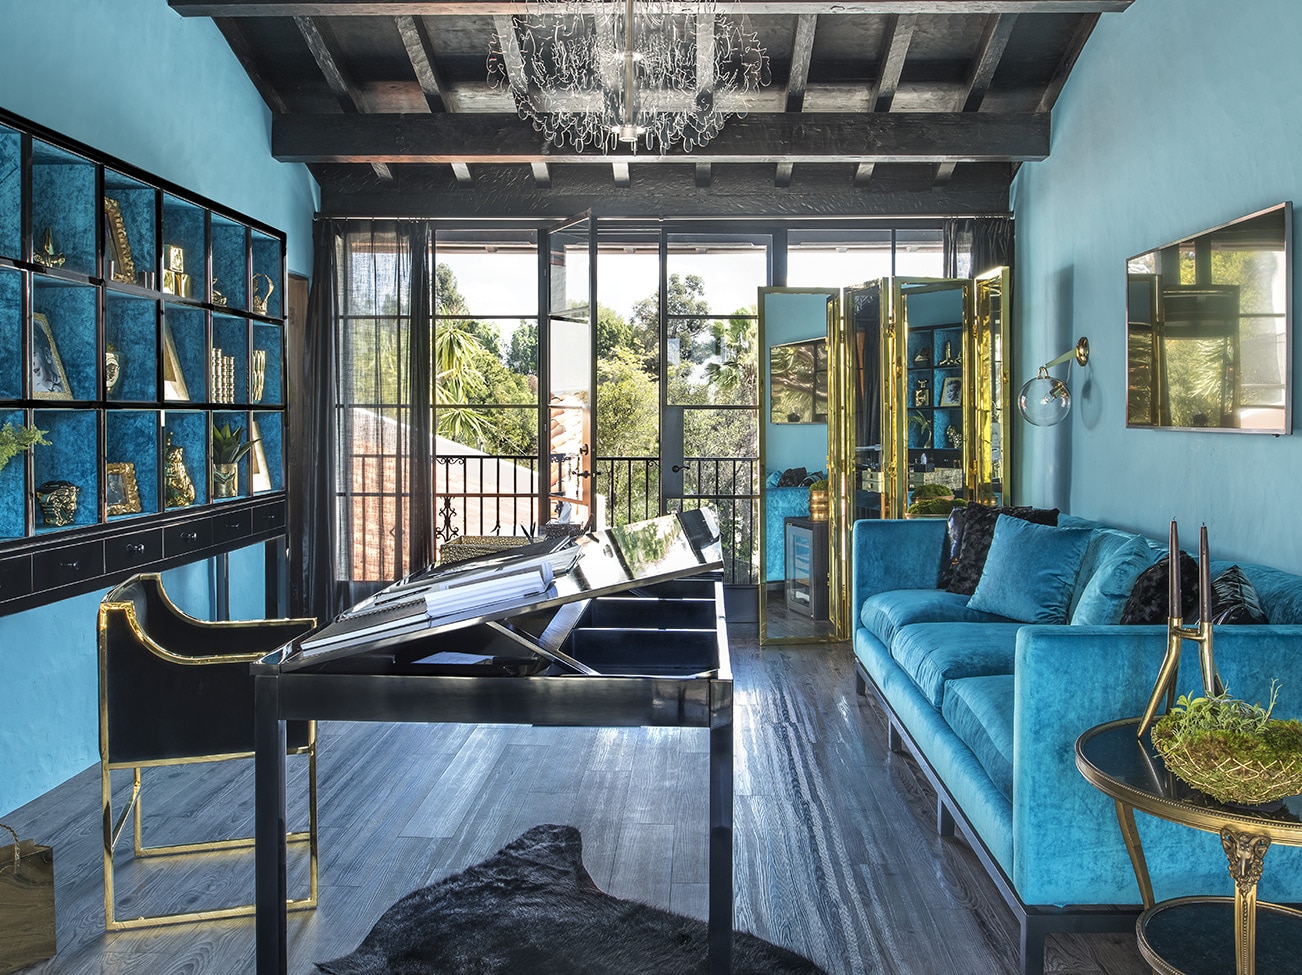 Pièce turquoise avec plafond à poutres noires, sofa tuxedo bleu, table à bascule en ébène et portes ouvrant sur une vue extérieure.